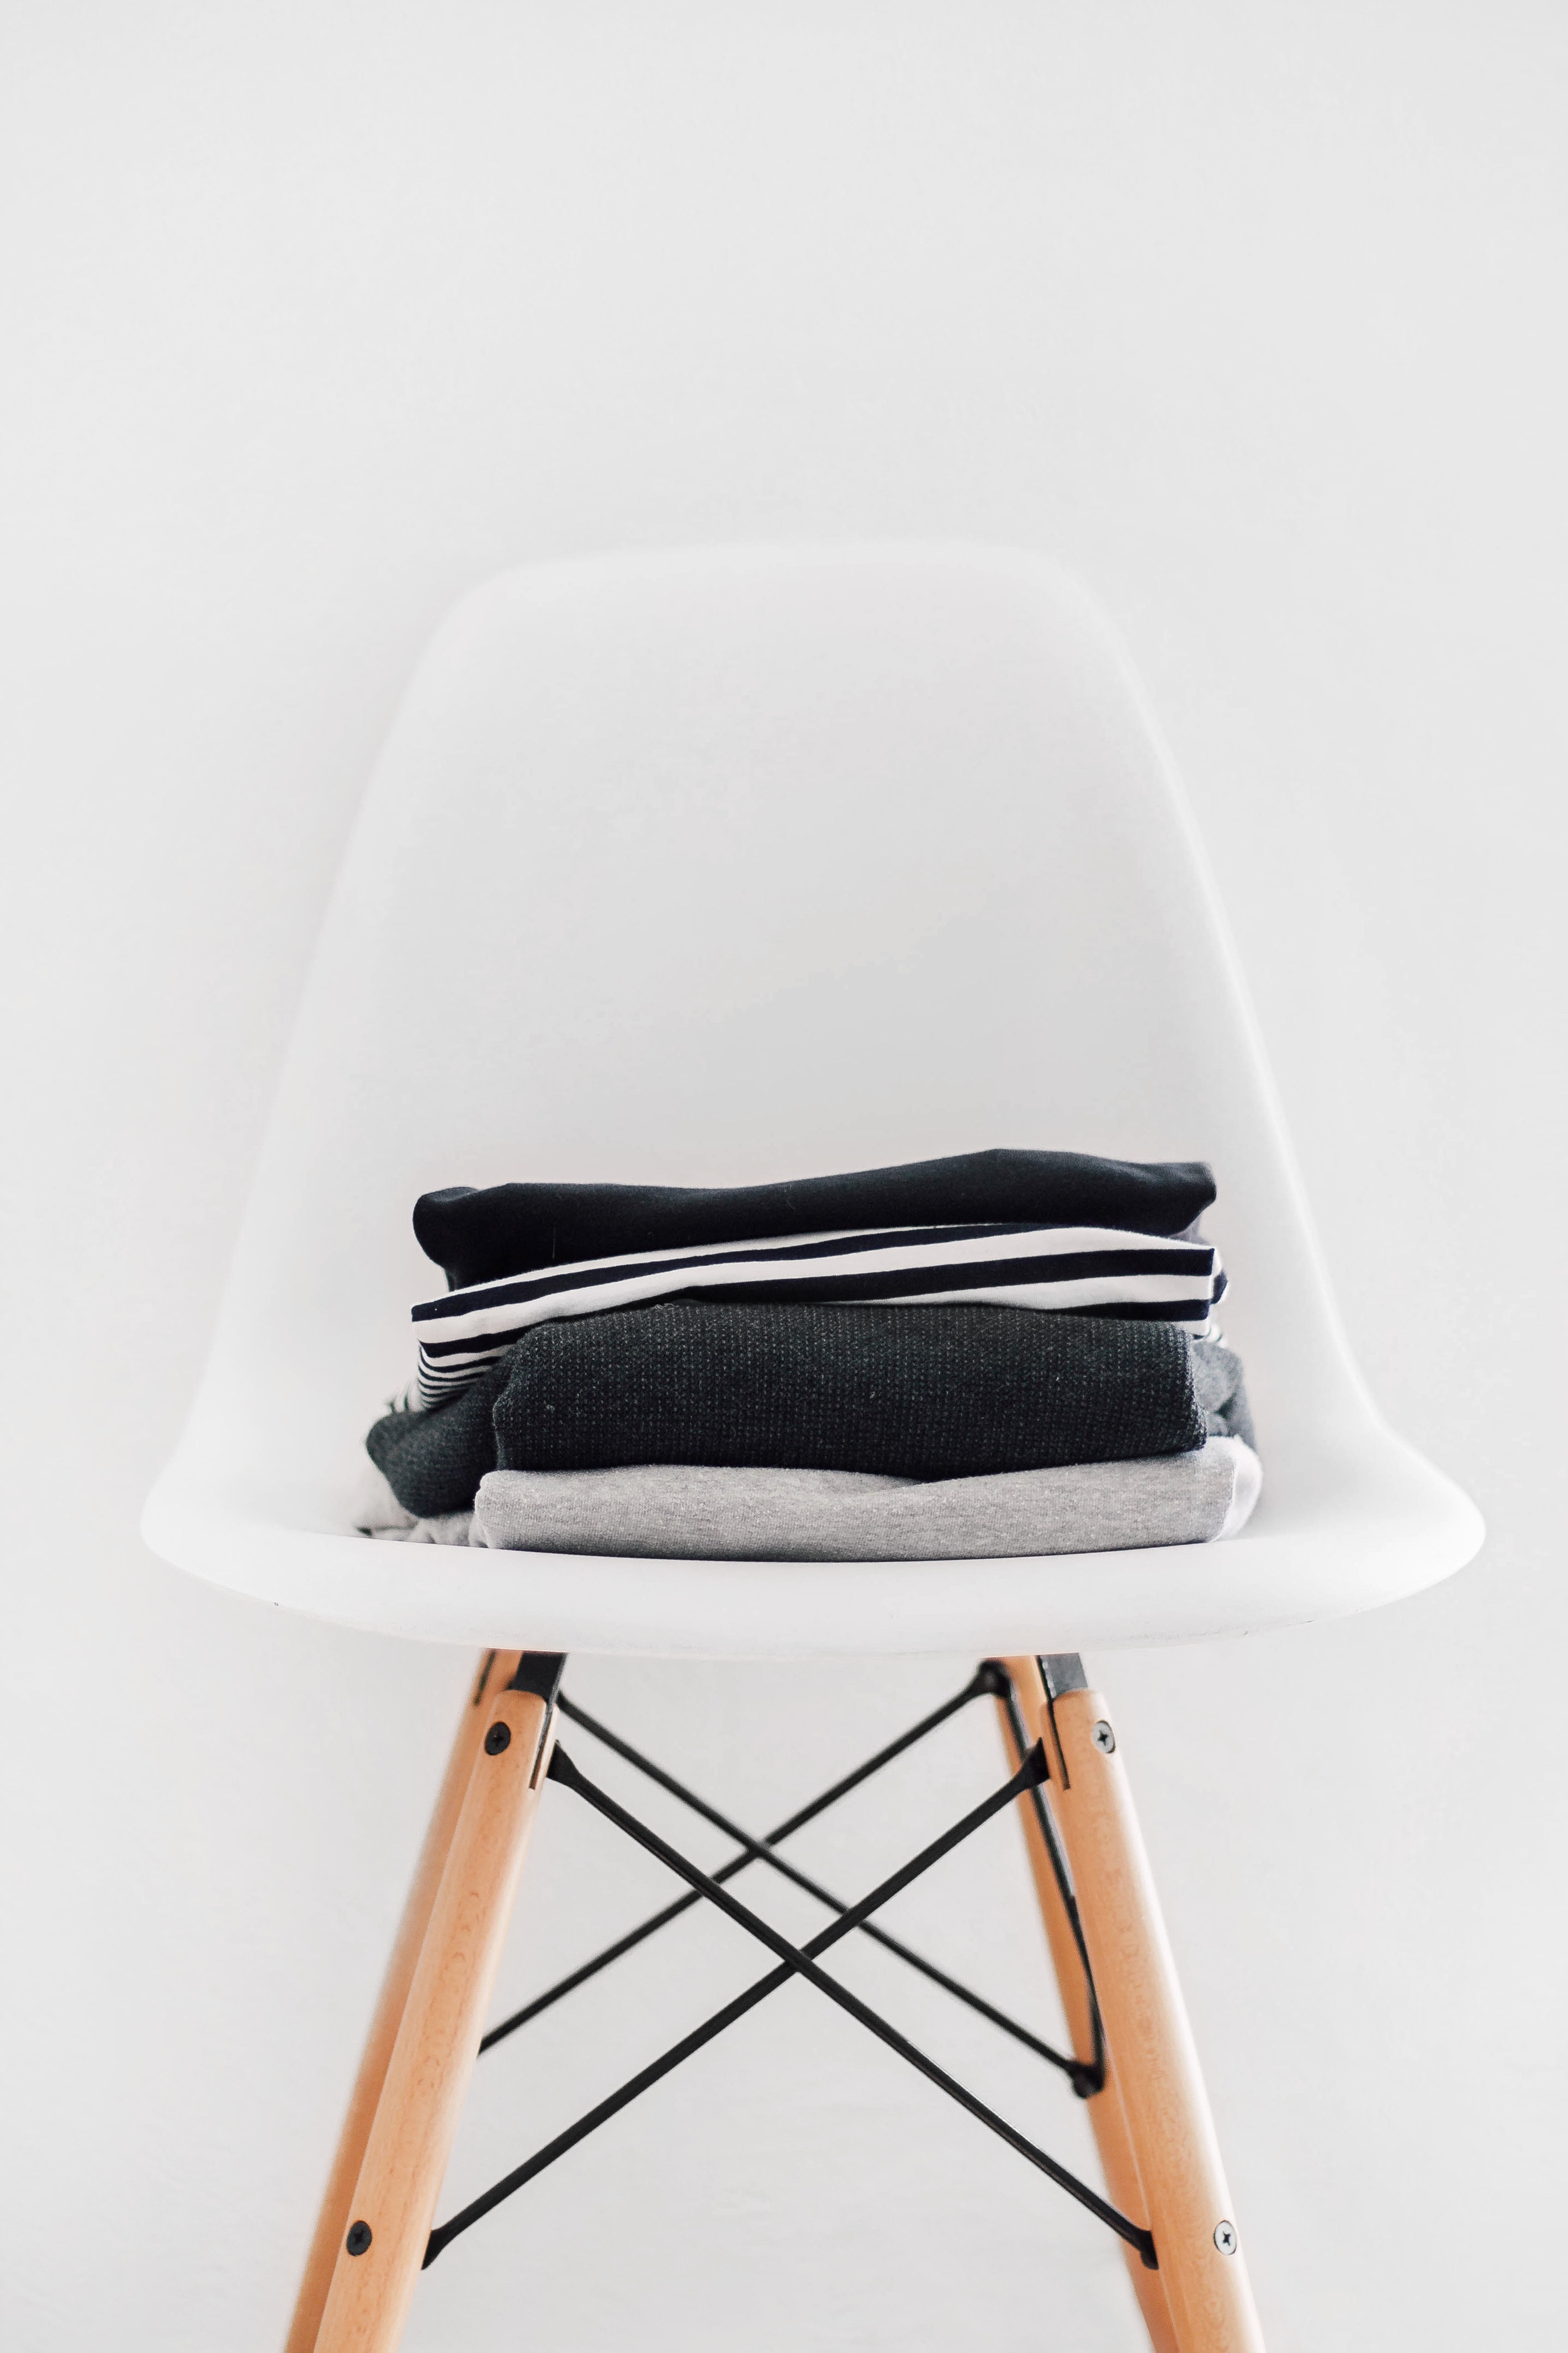 Stuhl mit Textilien welche man beschriften könnte